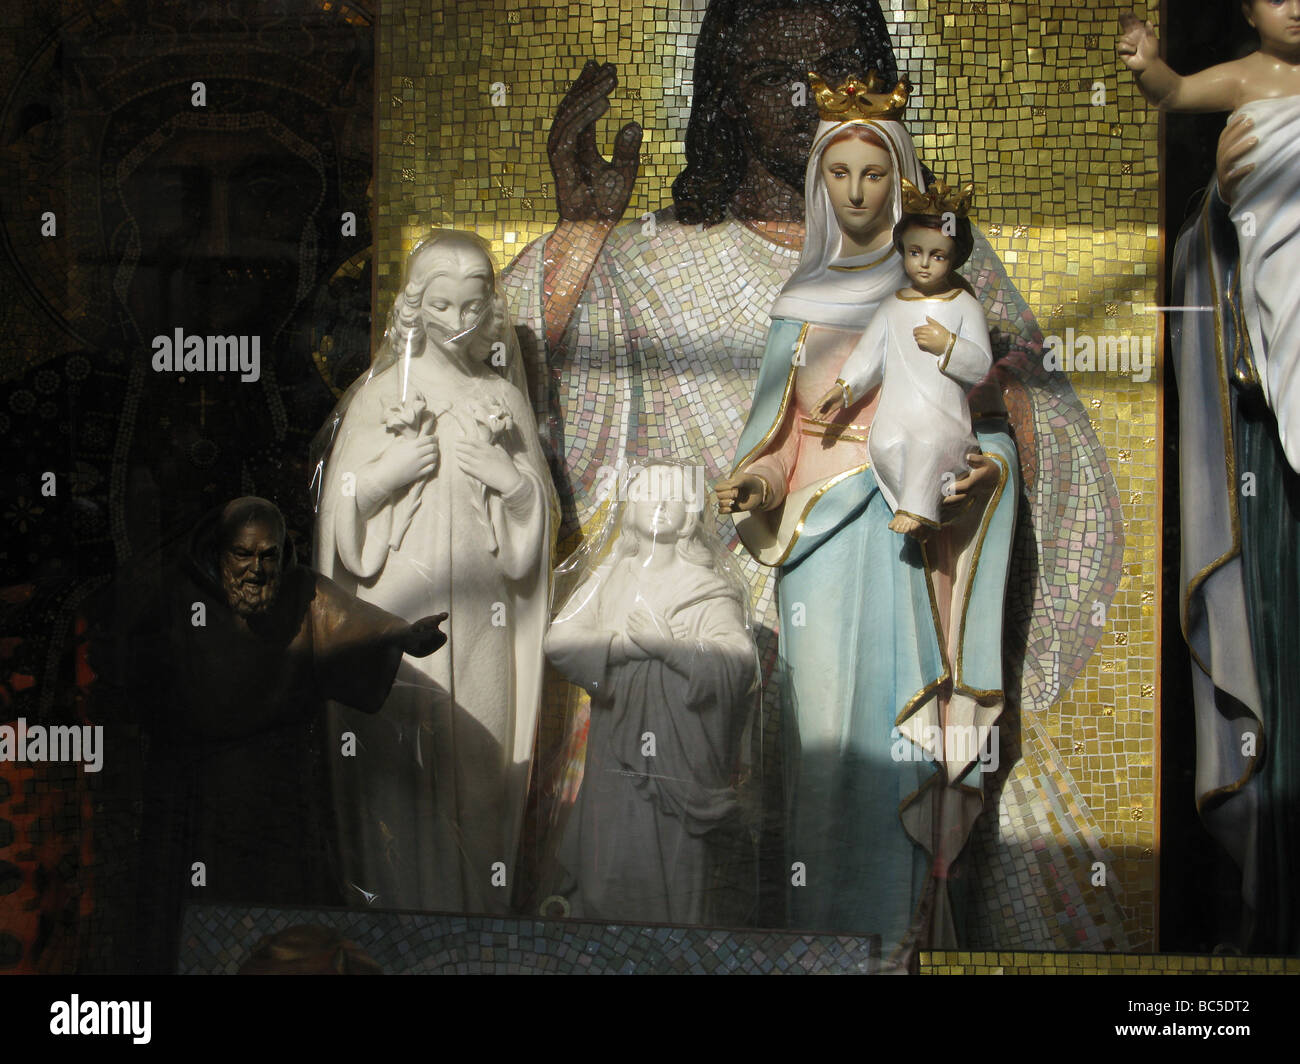 Les modèles religieux en cadeaux à Rome, Italie Banque D'Images